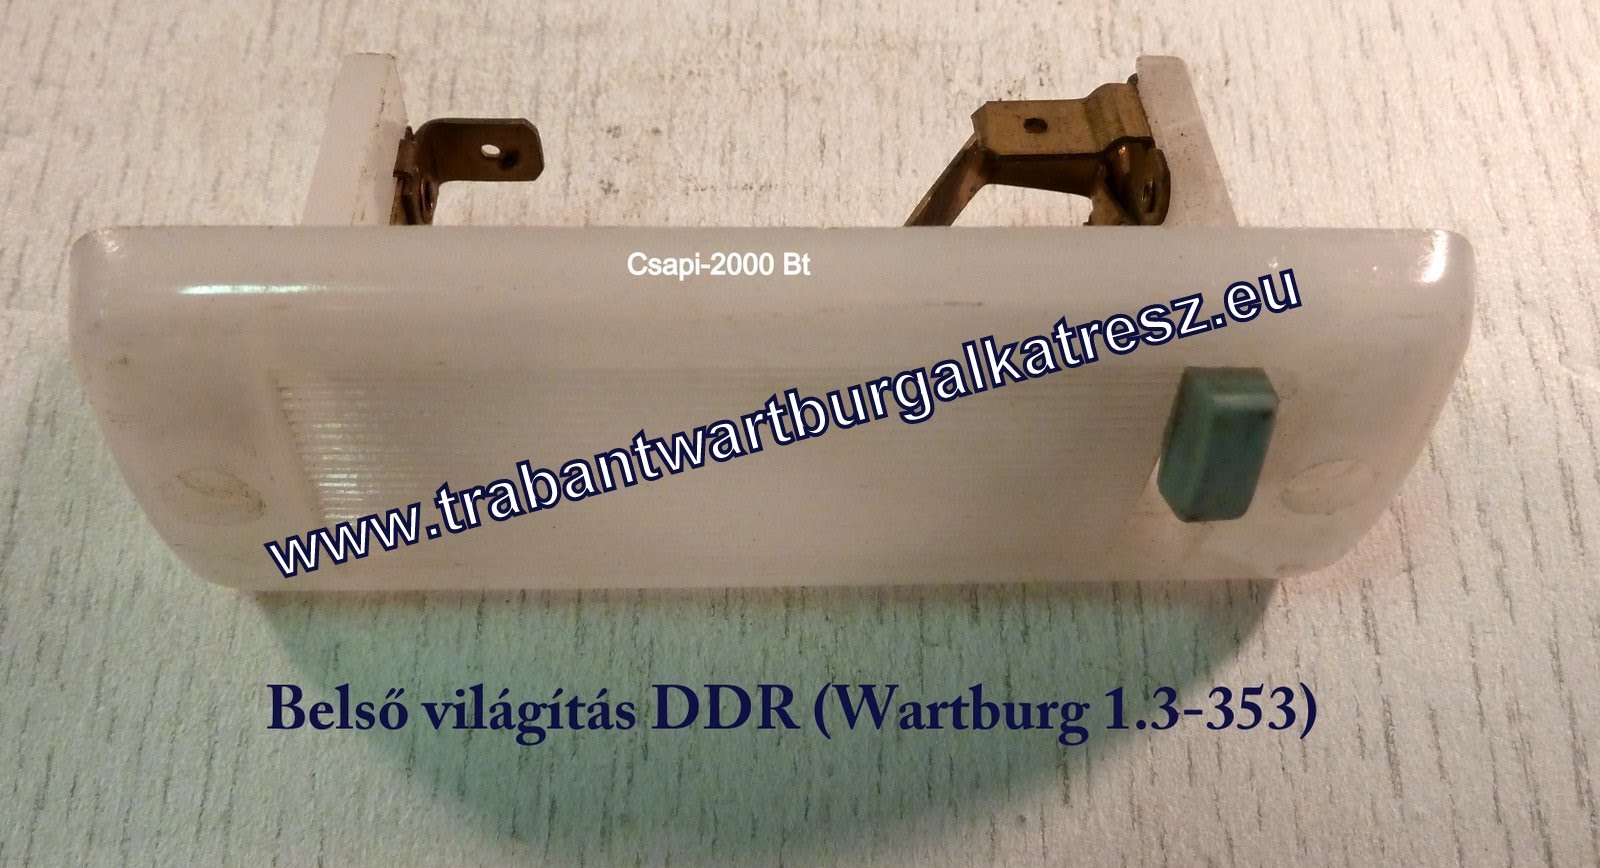 Belső világítás DDR  (Wb.1.3-353)